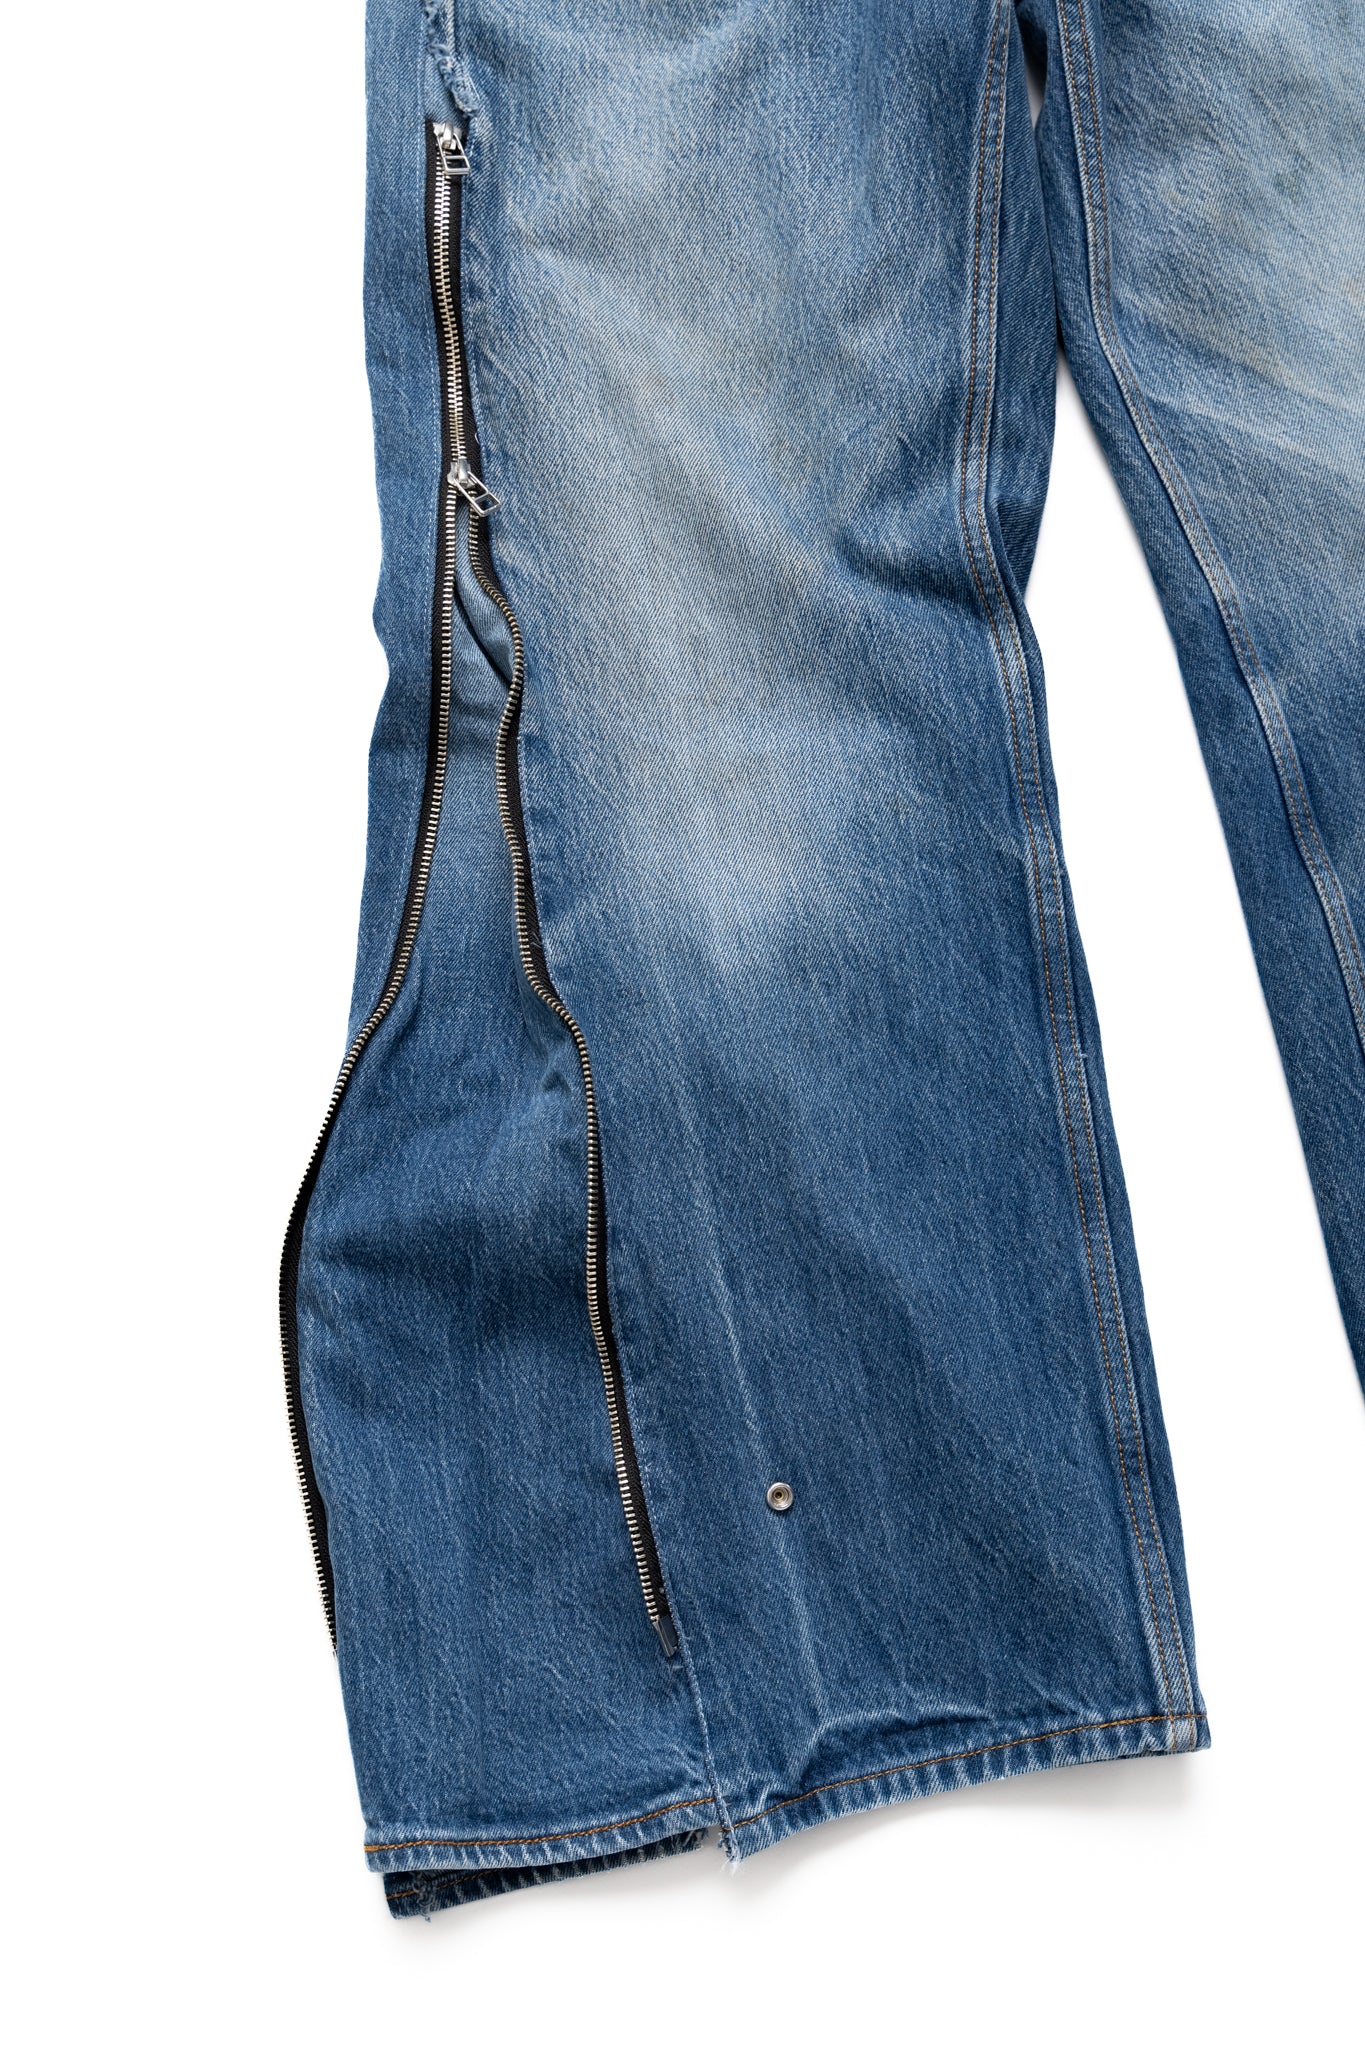 Zip Baggy Jeans Blue - M (2)